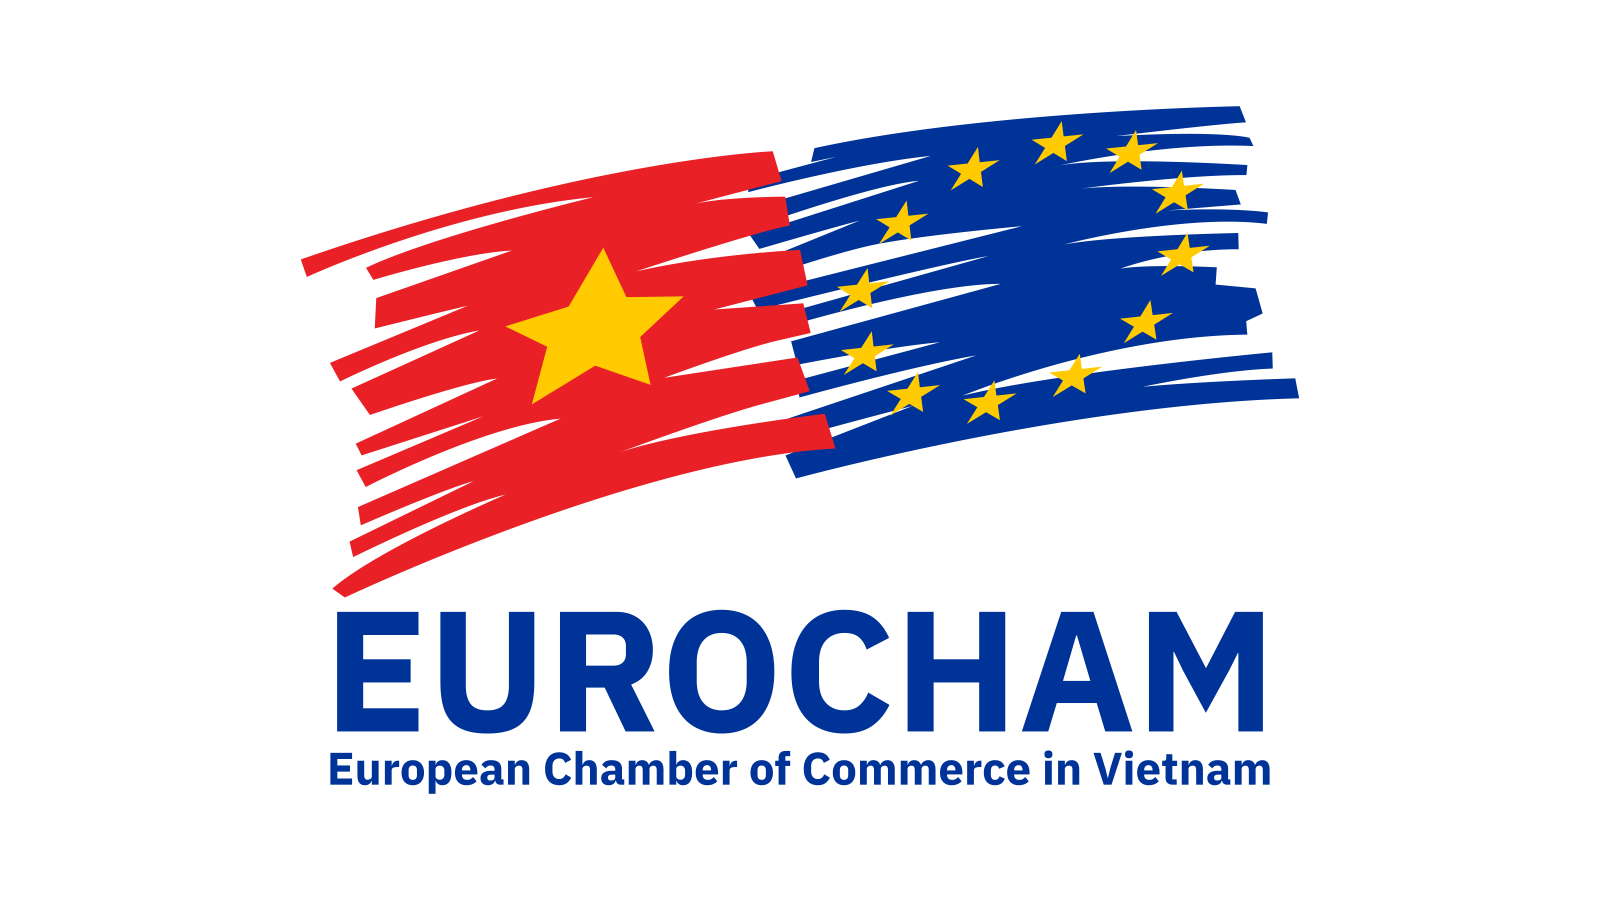 EuroCham – European Chamber of Commerce in Vietnam